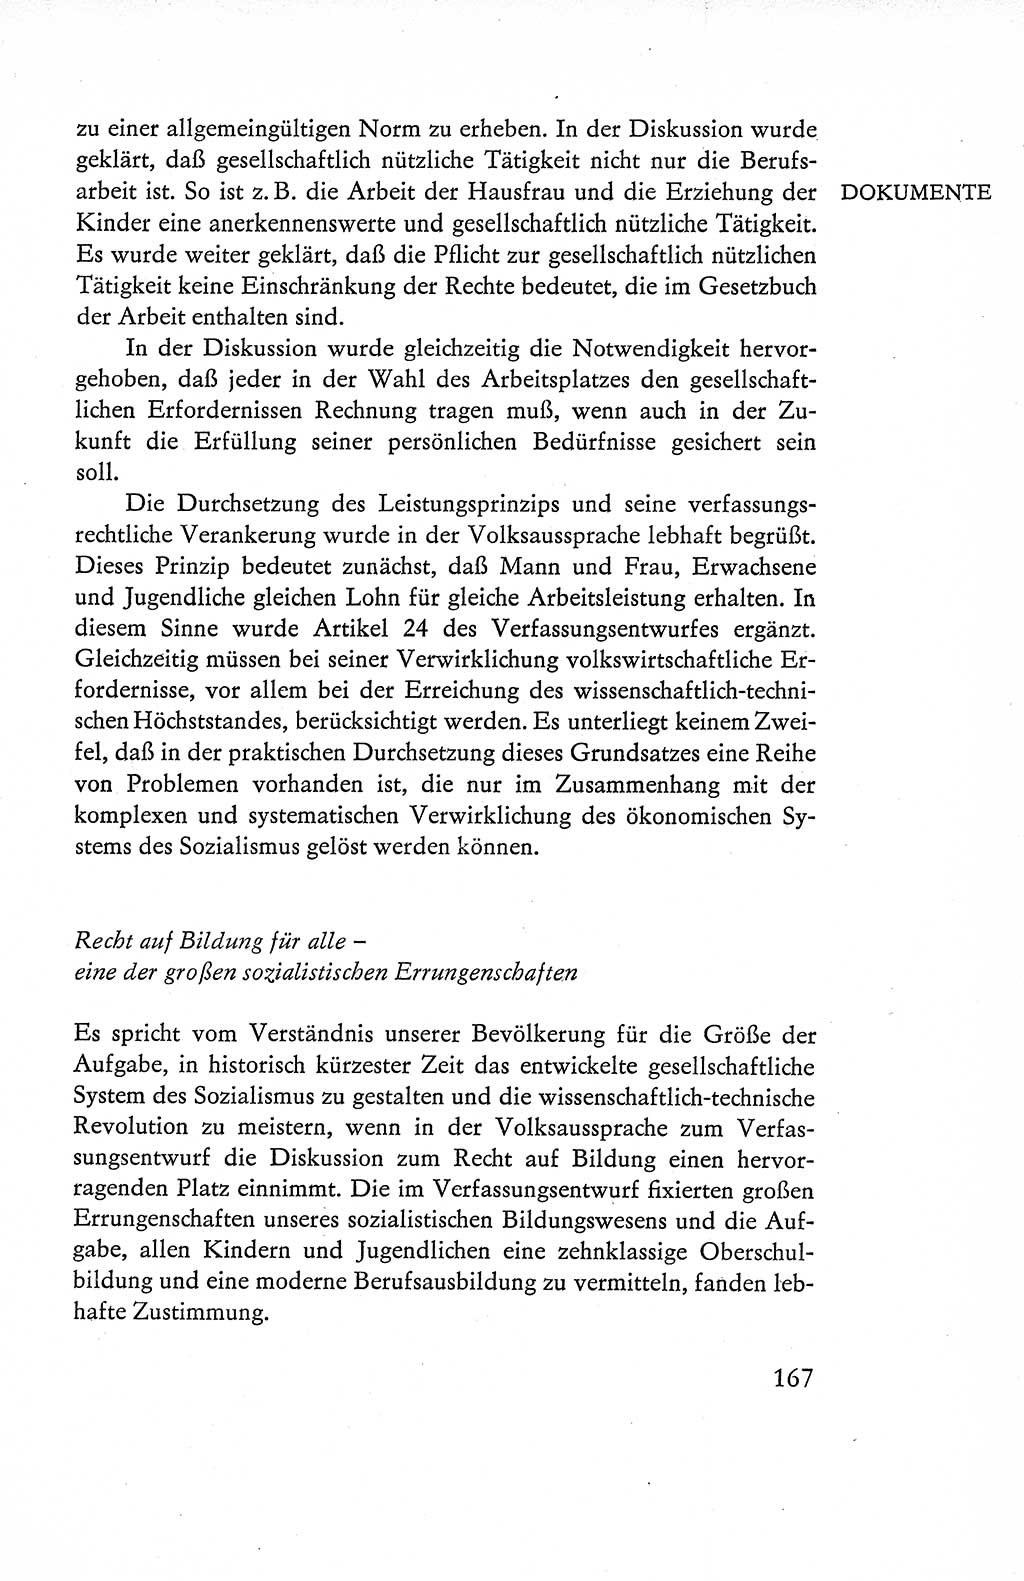 Verfassung der Deutschen Demokratischen Republik (DDR), Dokumente, Kommentar 1969, Band 1, Seite 167 (Verf. DDR Dok. Komm. 1969, Bd. 1, S. 167)